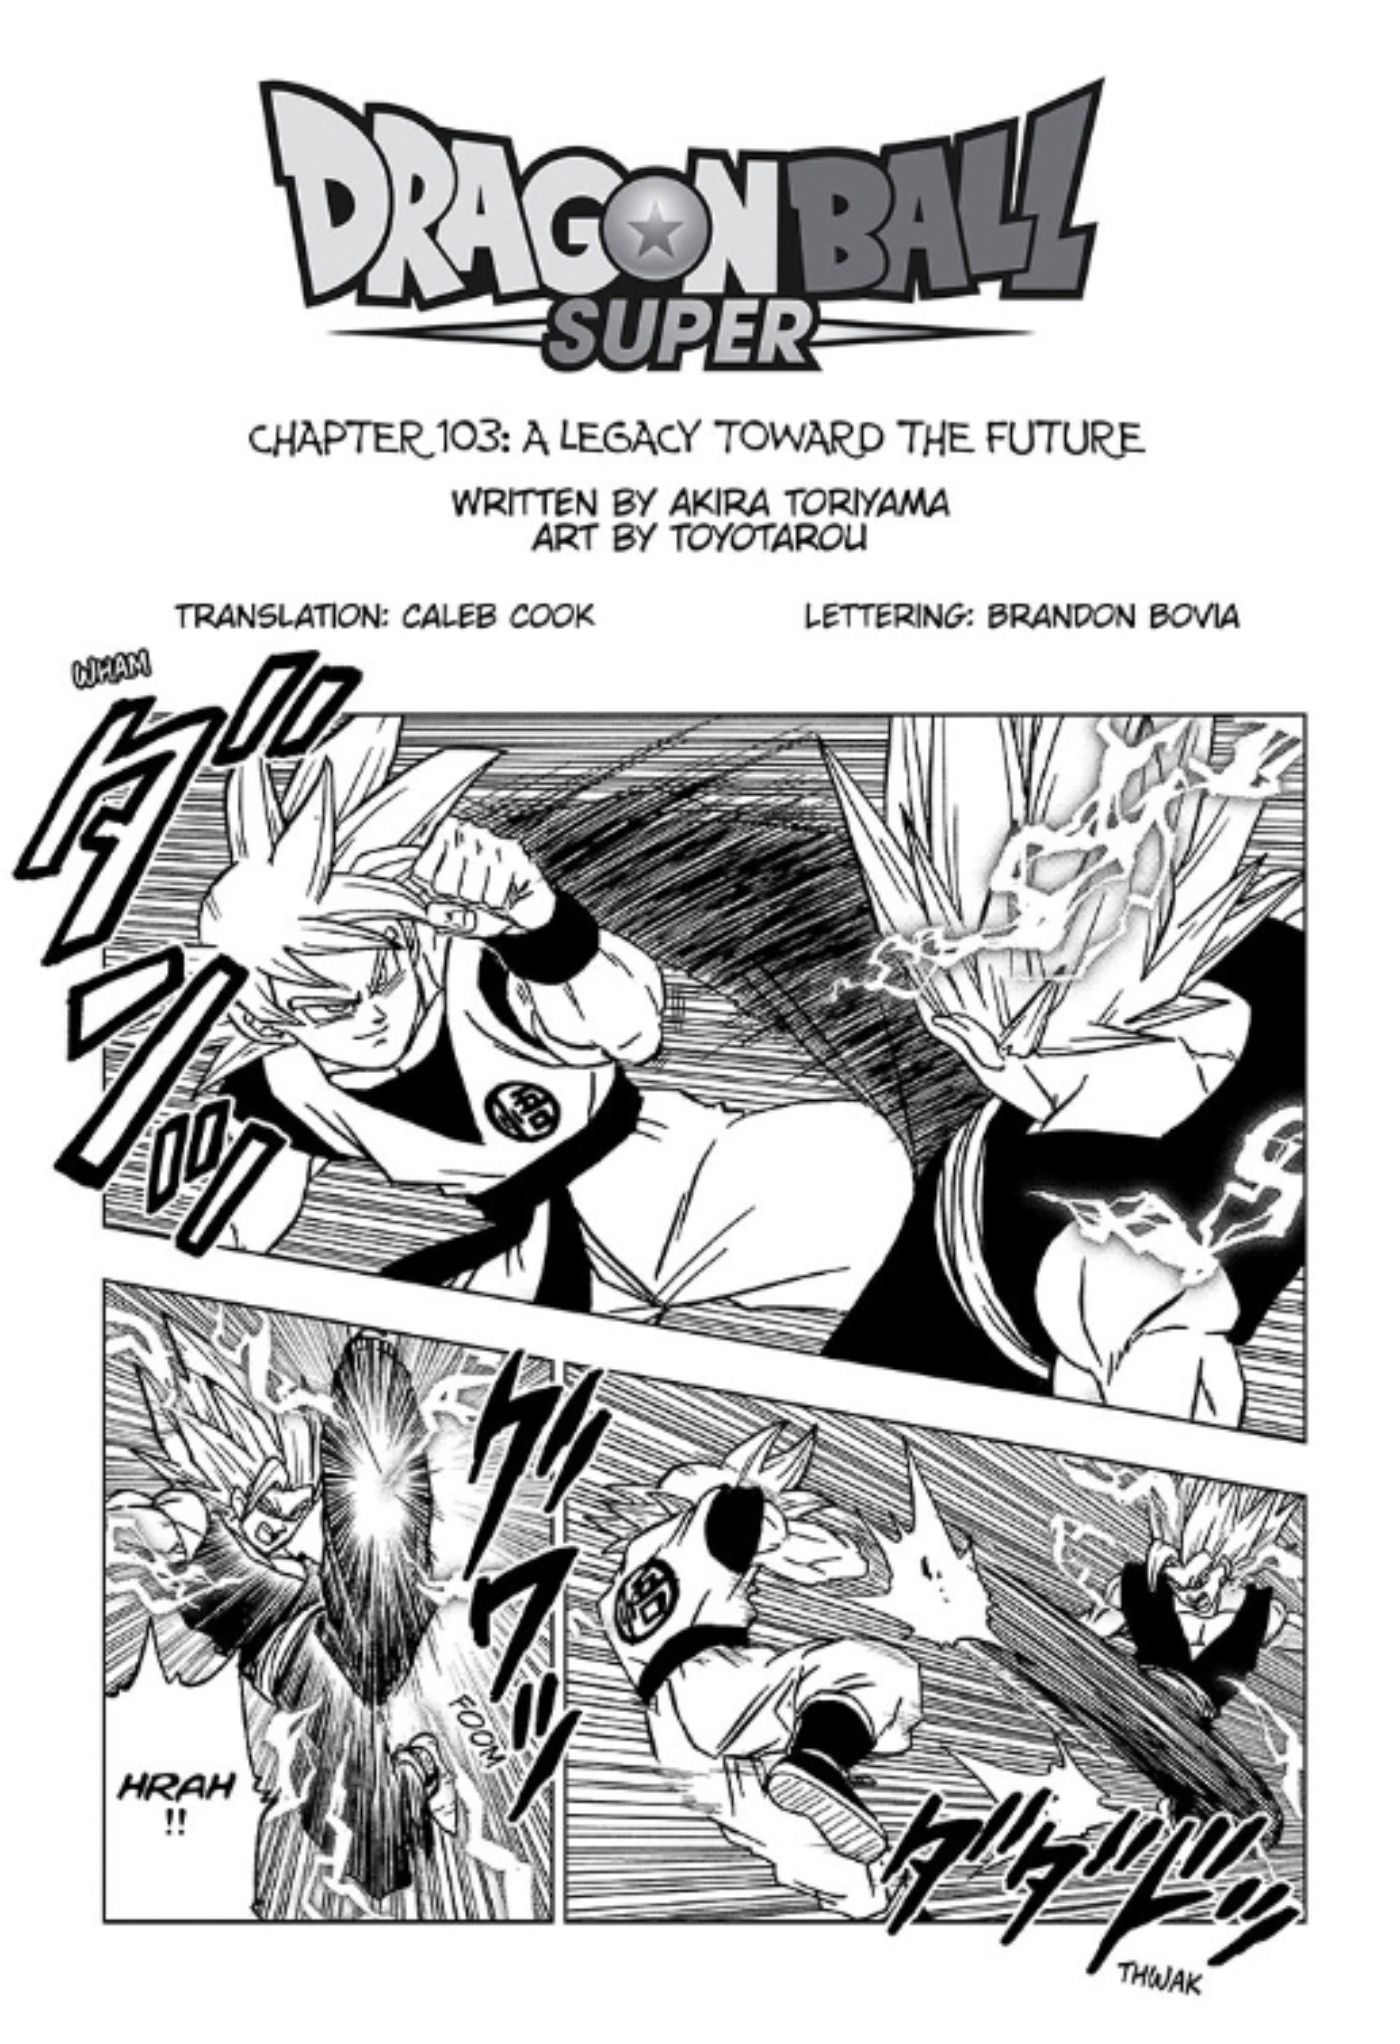 Capa do capítulo 103 de Dragon Ball Super apresentando Goku vs Gohan.